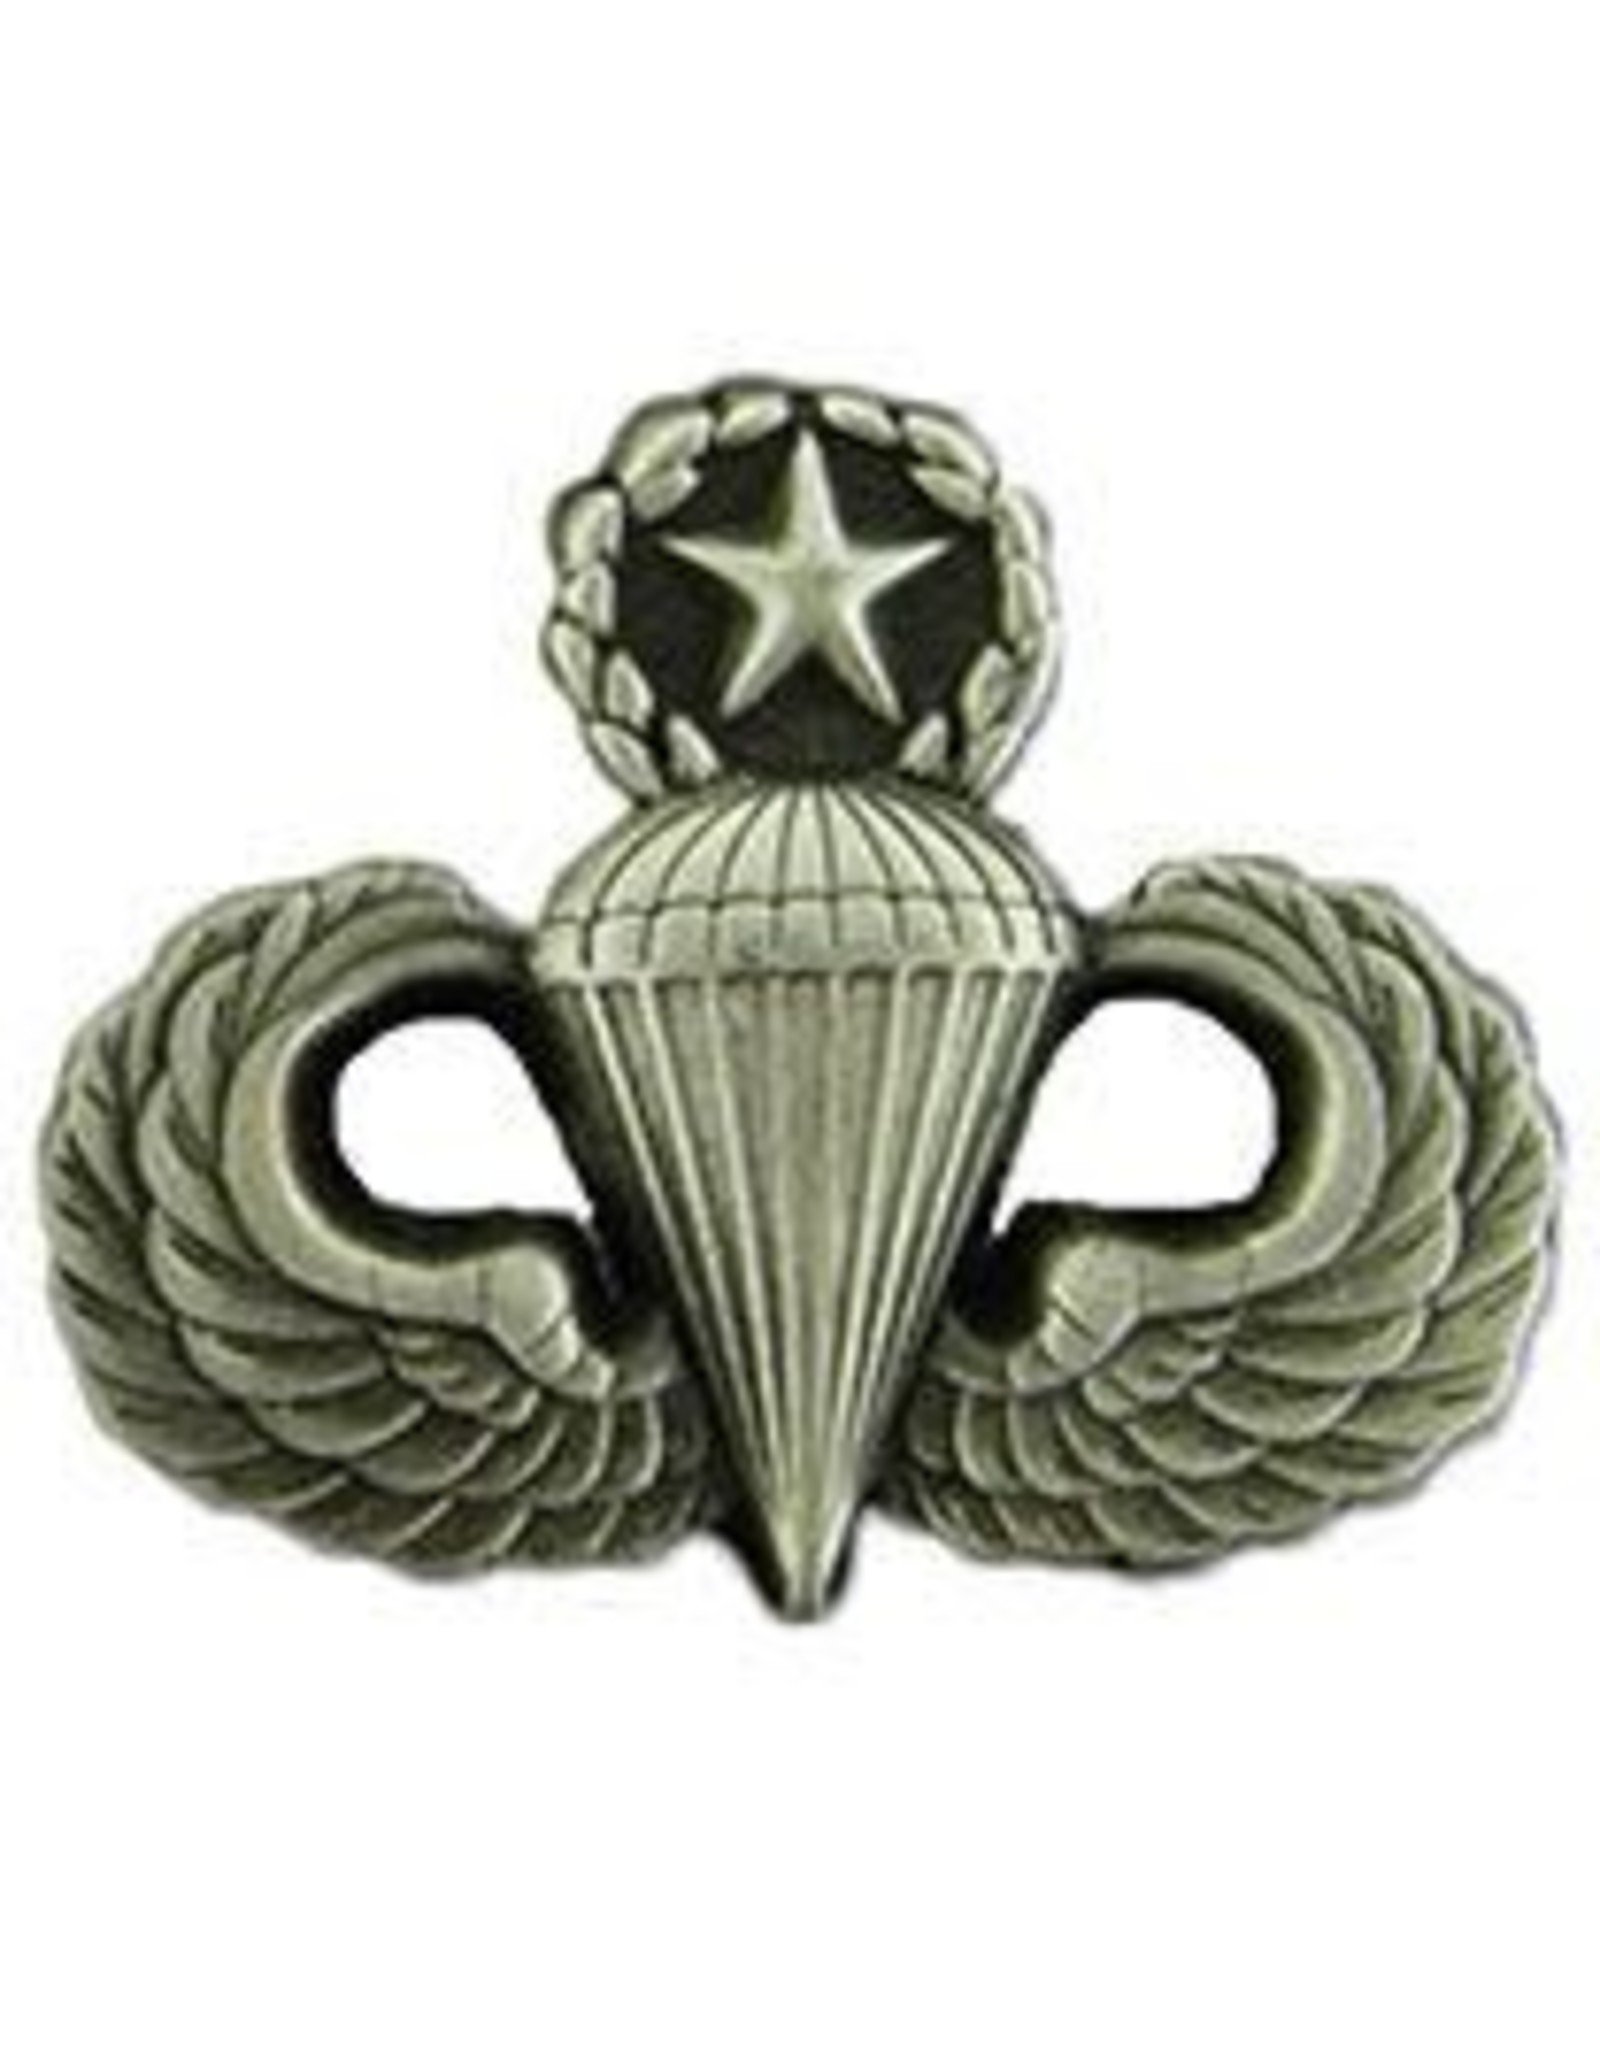 Pin - Wing - Army Para Master